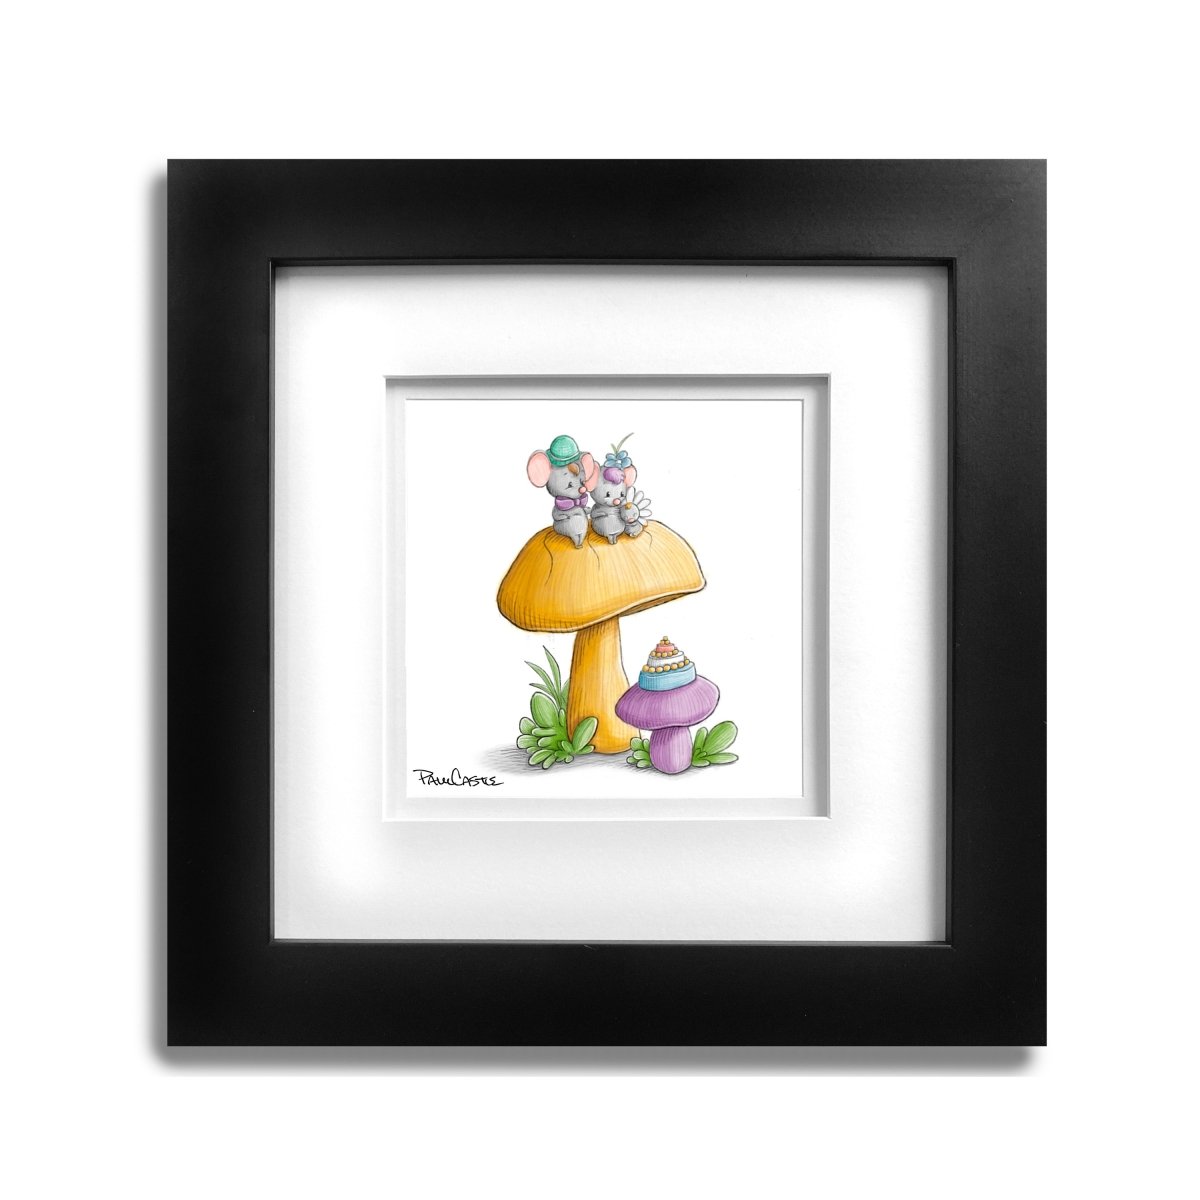 mice-sitting-on-mushroom-toadstool-illustration-black-frame